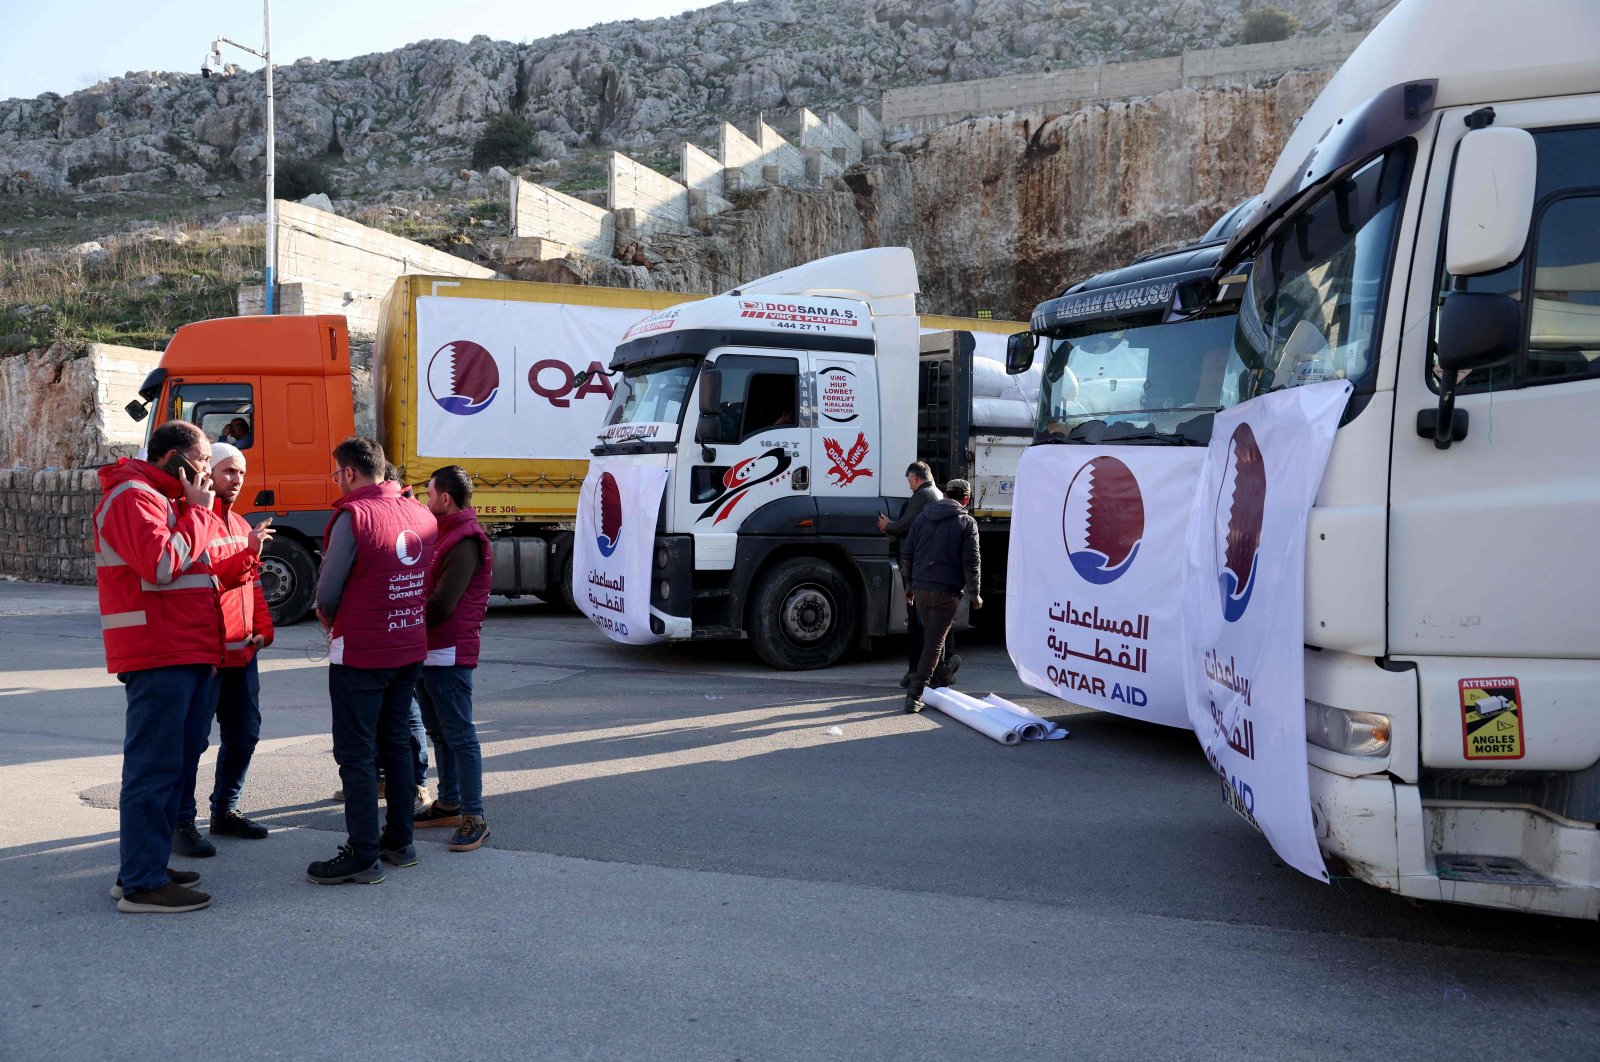 Suriah mengizinkan bantuan gempa melalui 2 gerbang perbatasan lagi: PBB